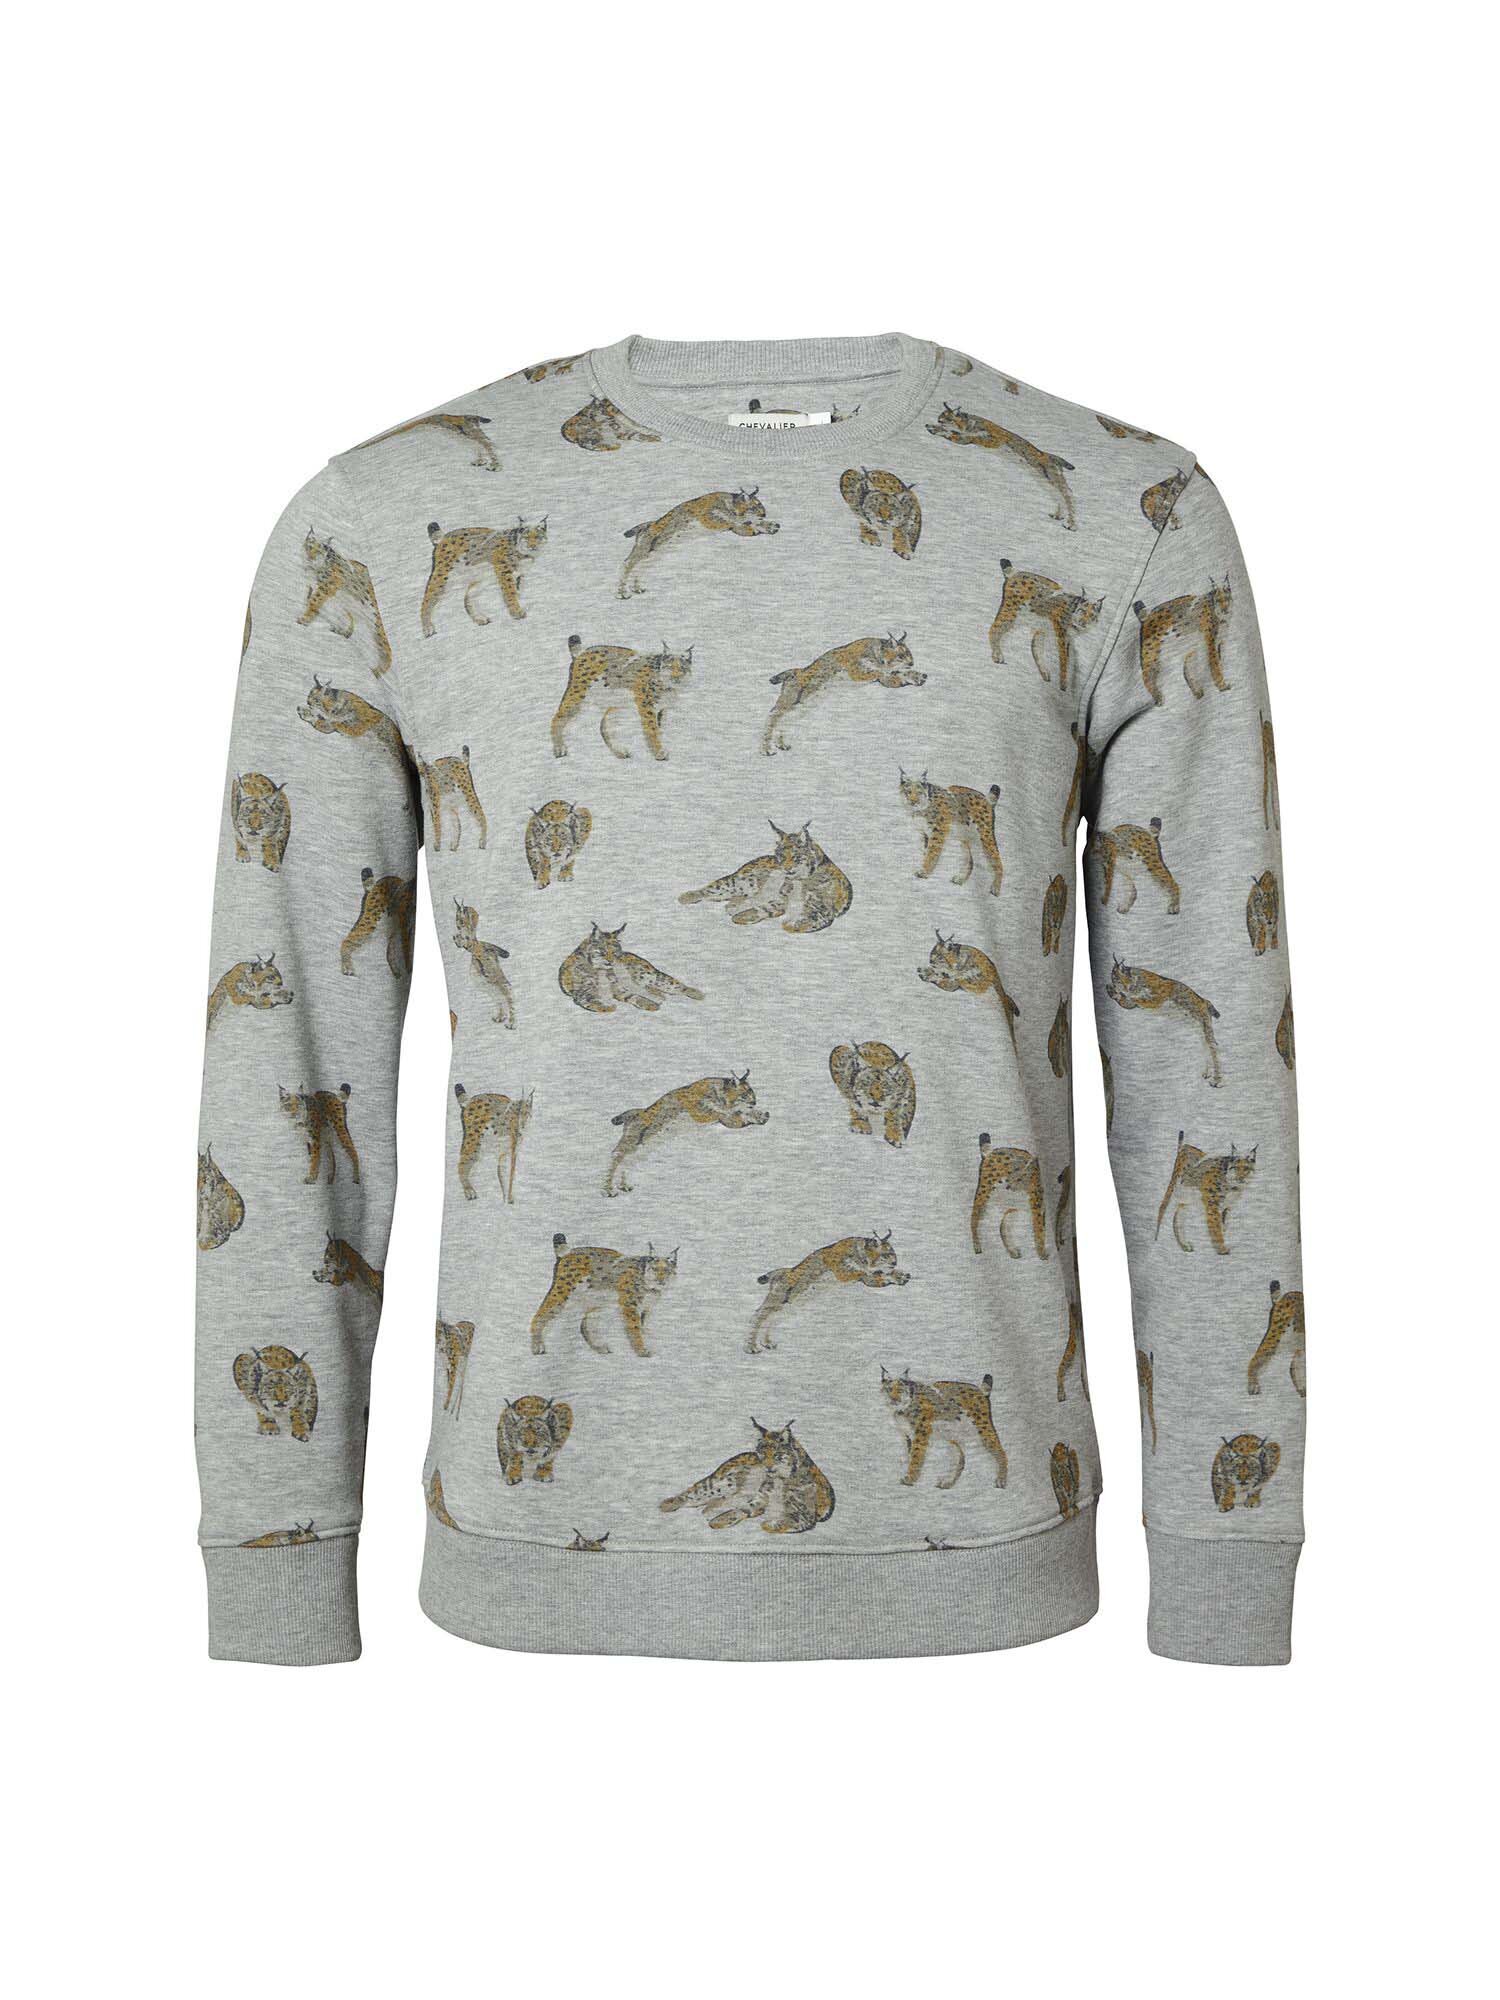 Wildcat Sweatshirt Men